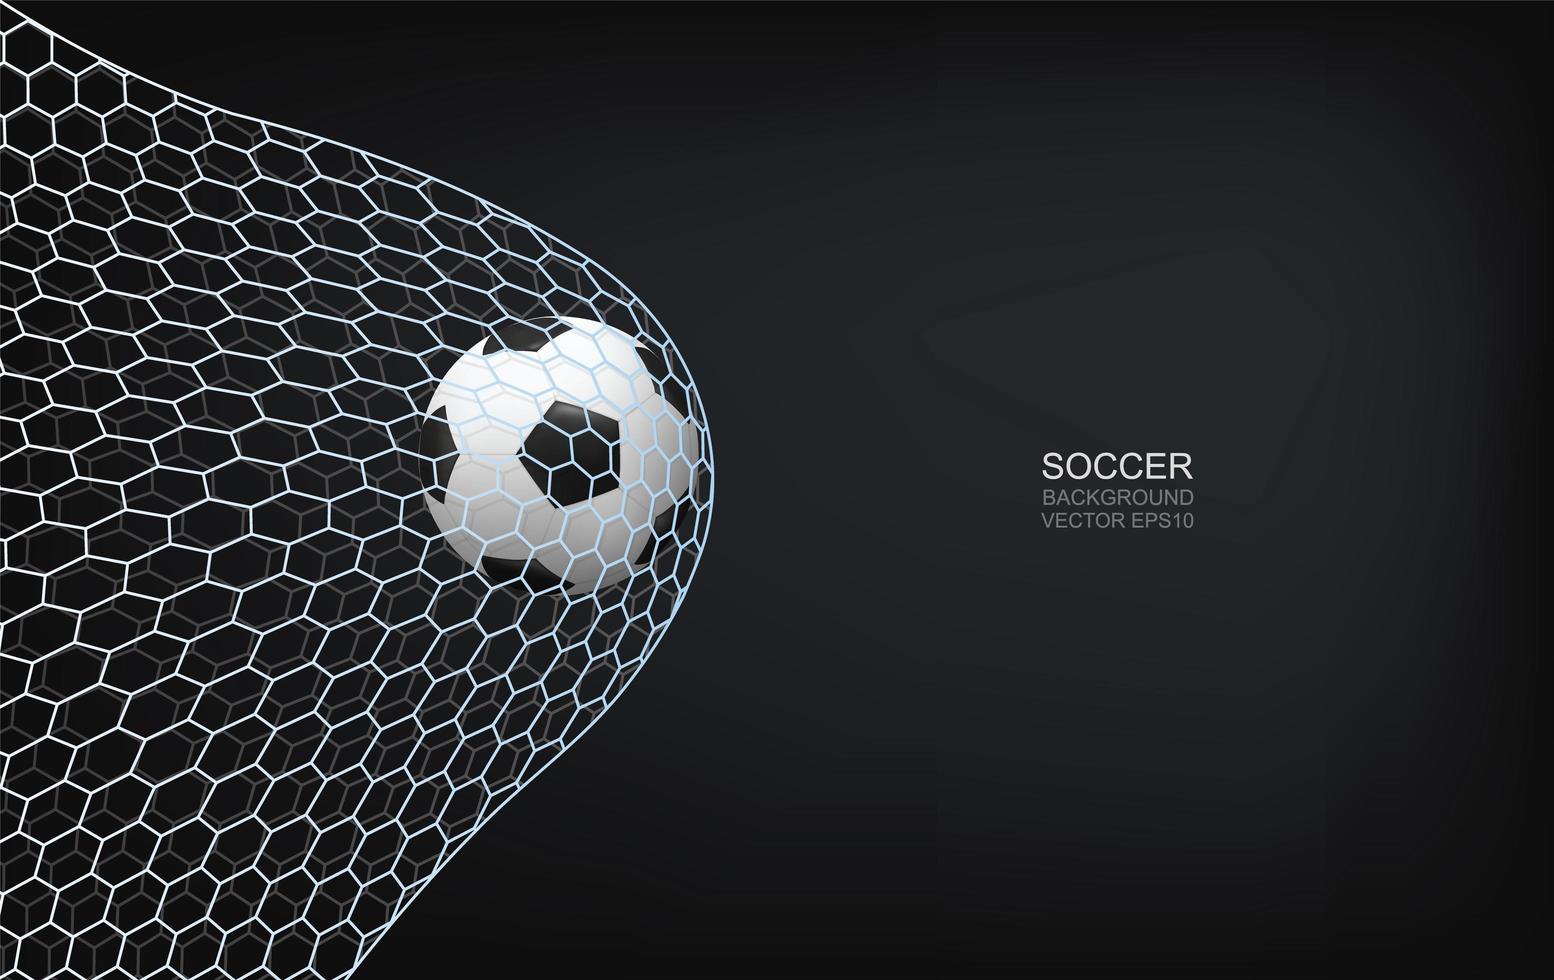 fotboll eller fotboll som flyger uppåt i nätet vektor